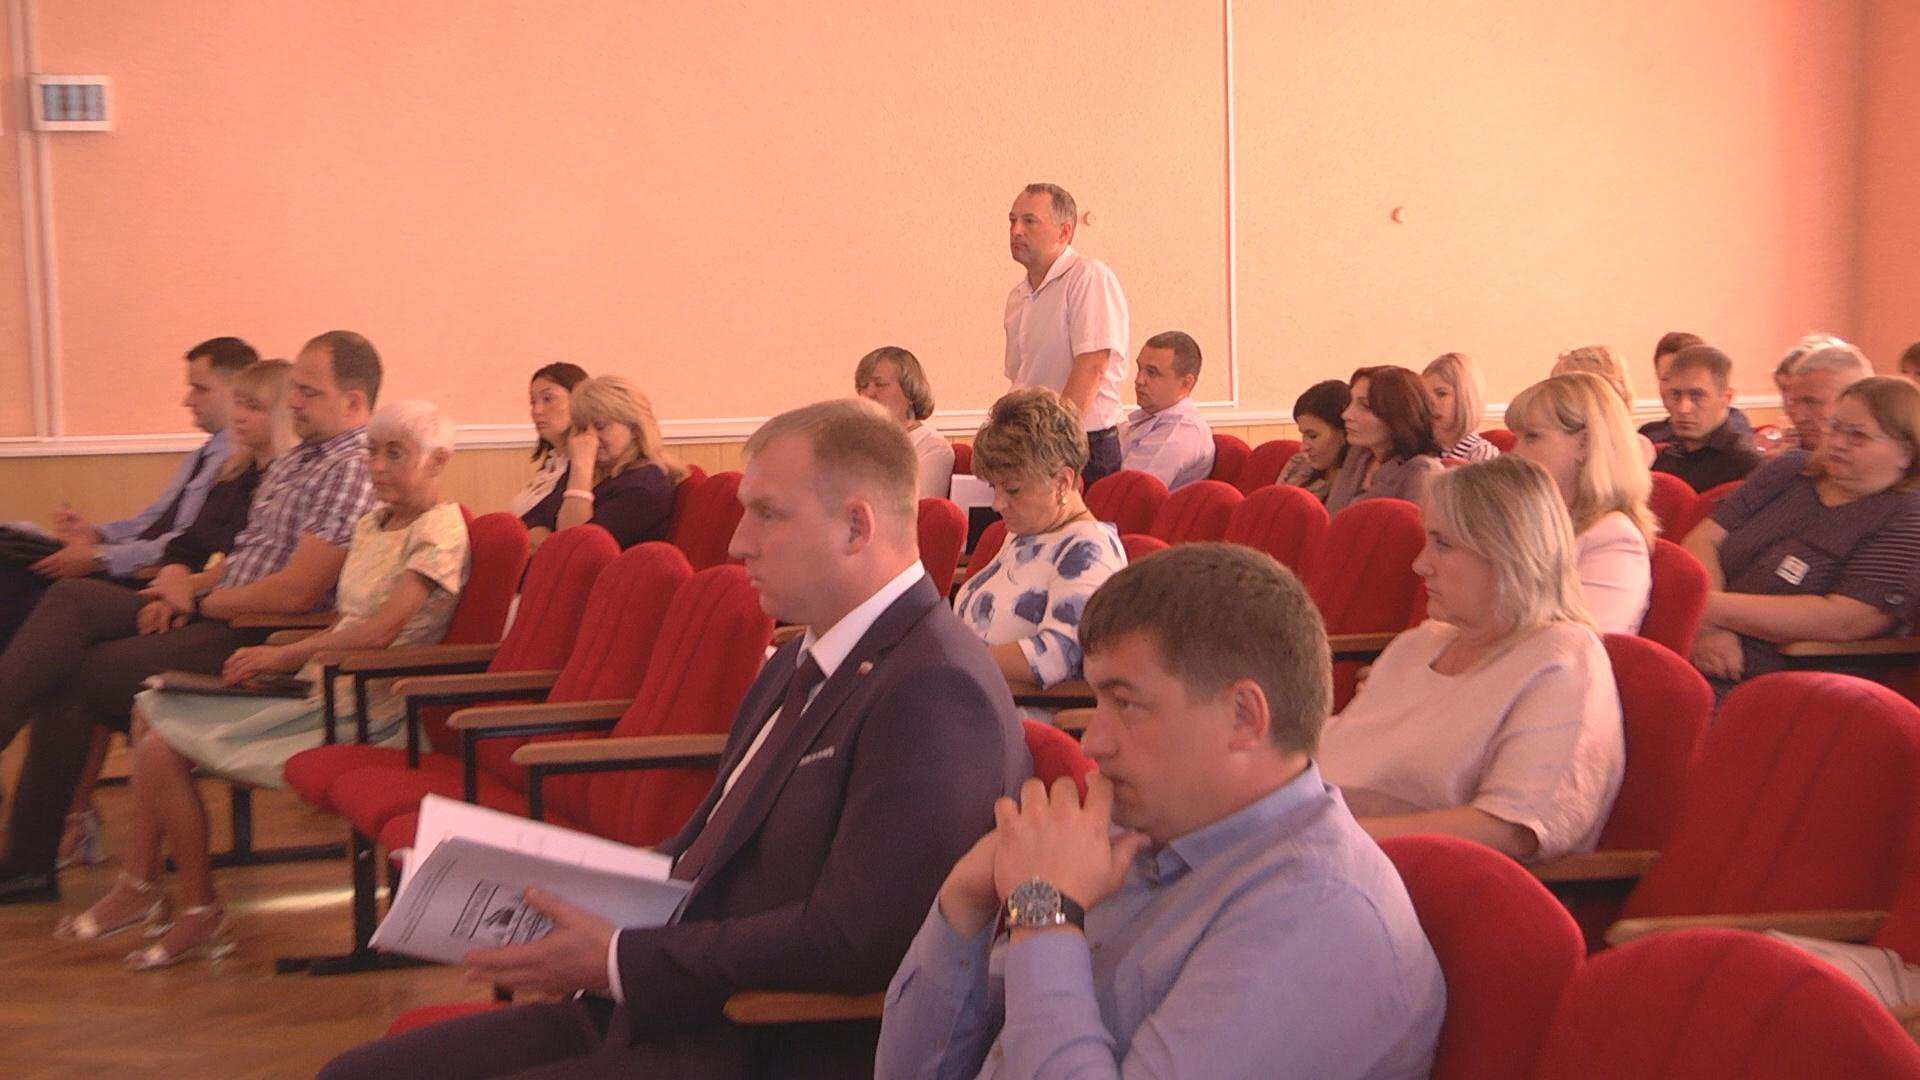 Клинцовские депутаты городского Совета провели заключительное заседание.